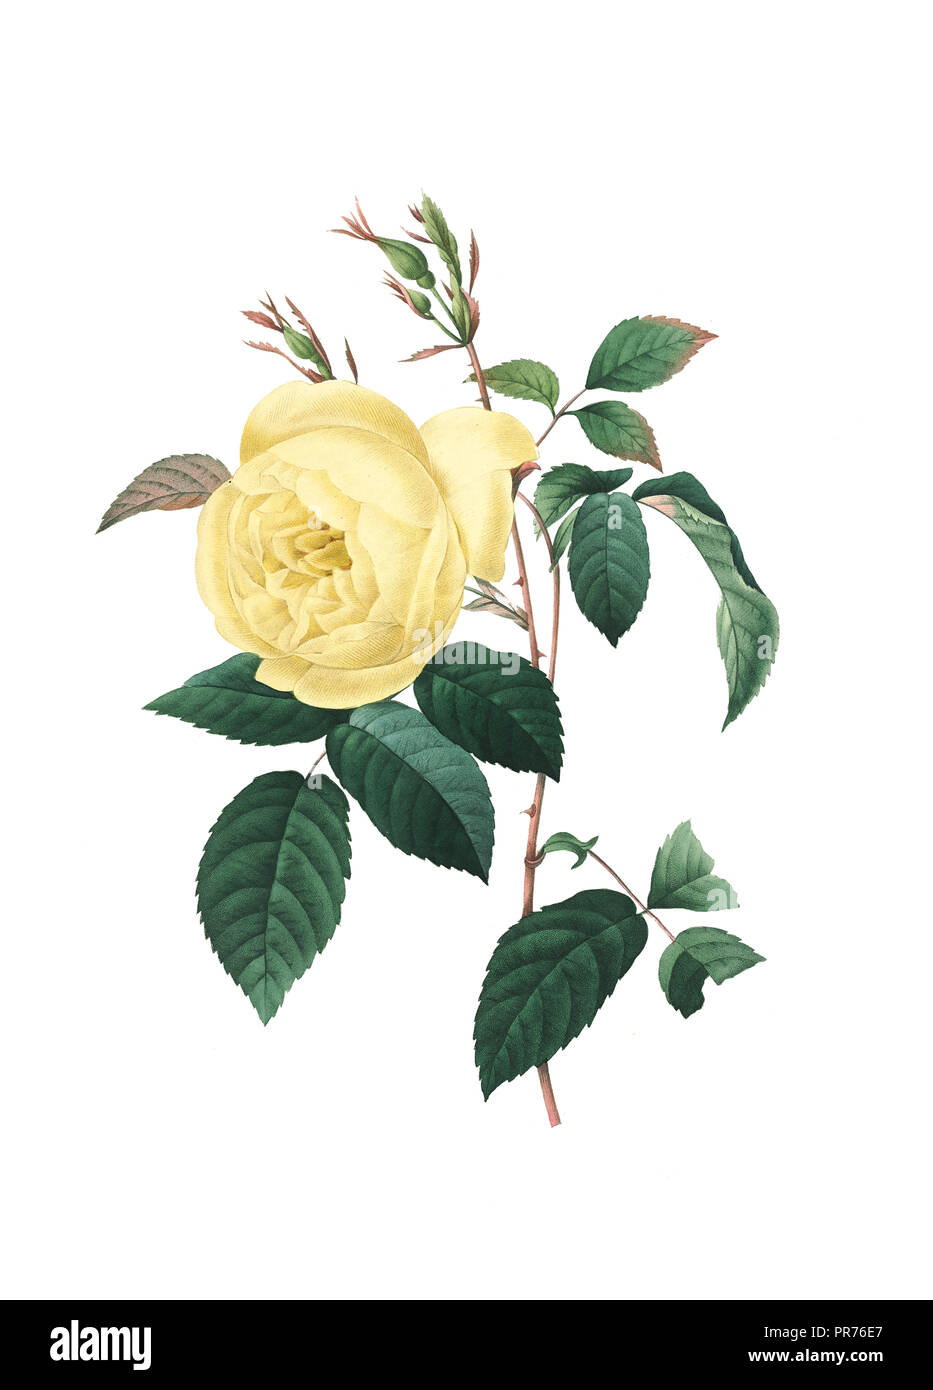 19ème siècle Illustration d'une rose jaune. Gravure par Pierre-Joseph Redoute. Publié dans Choix des Plus Belles fleurs, Paris (1827). Banque D'Images